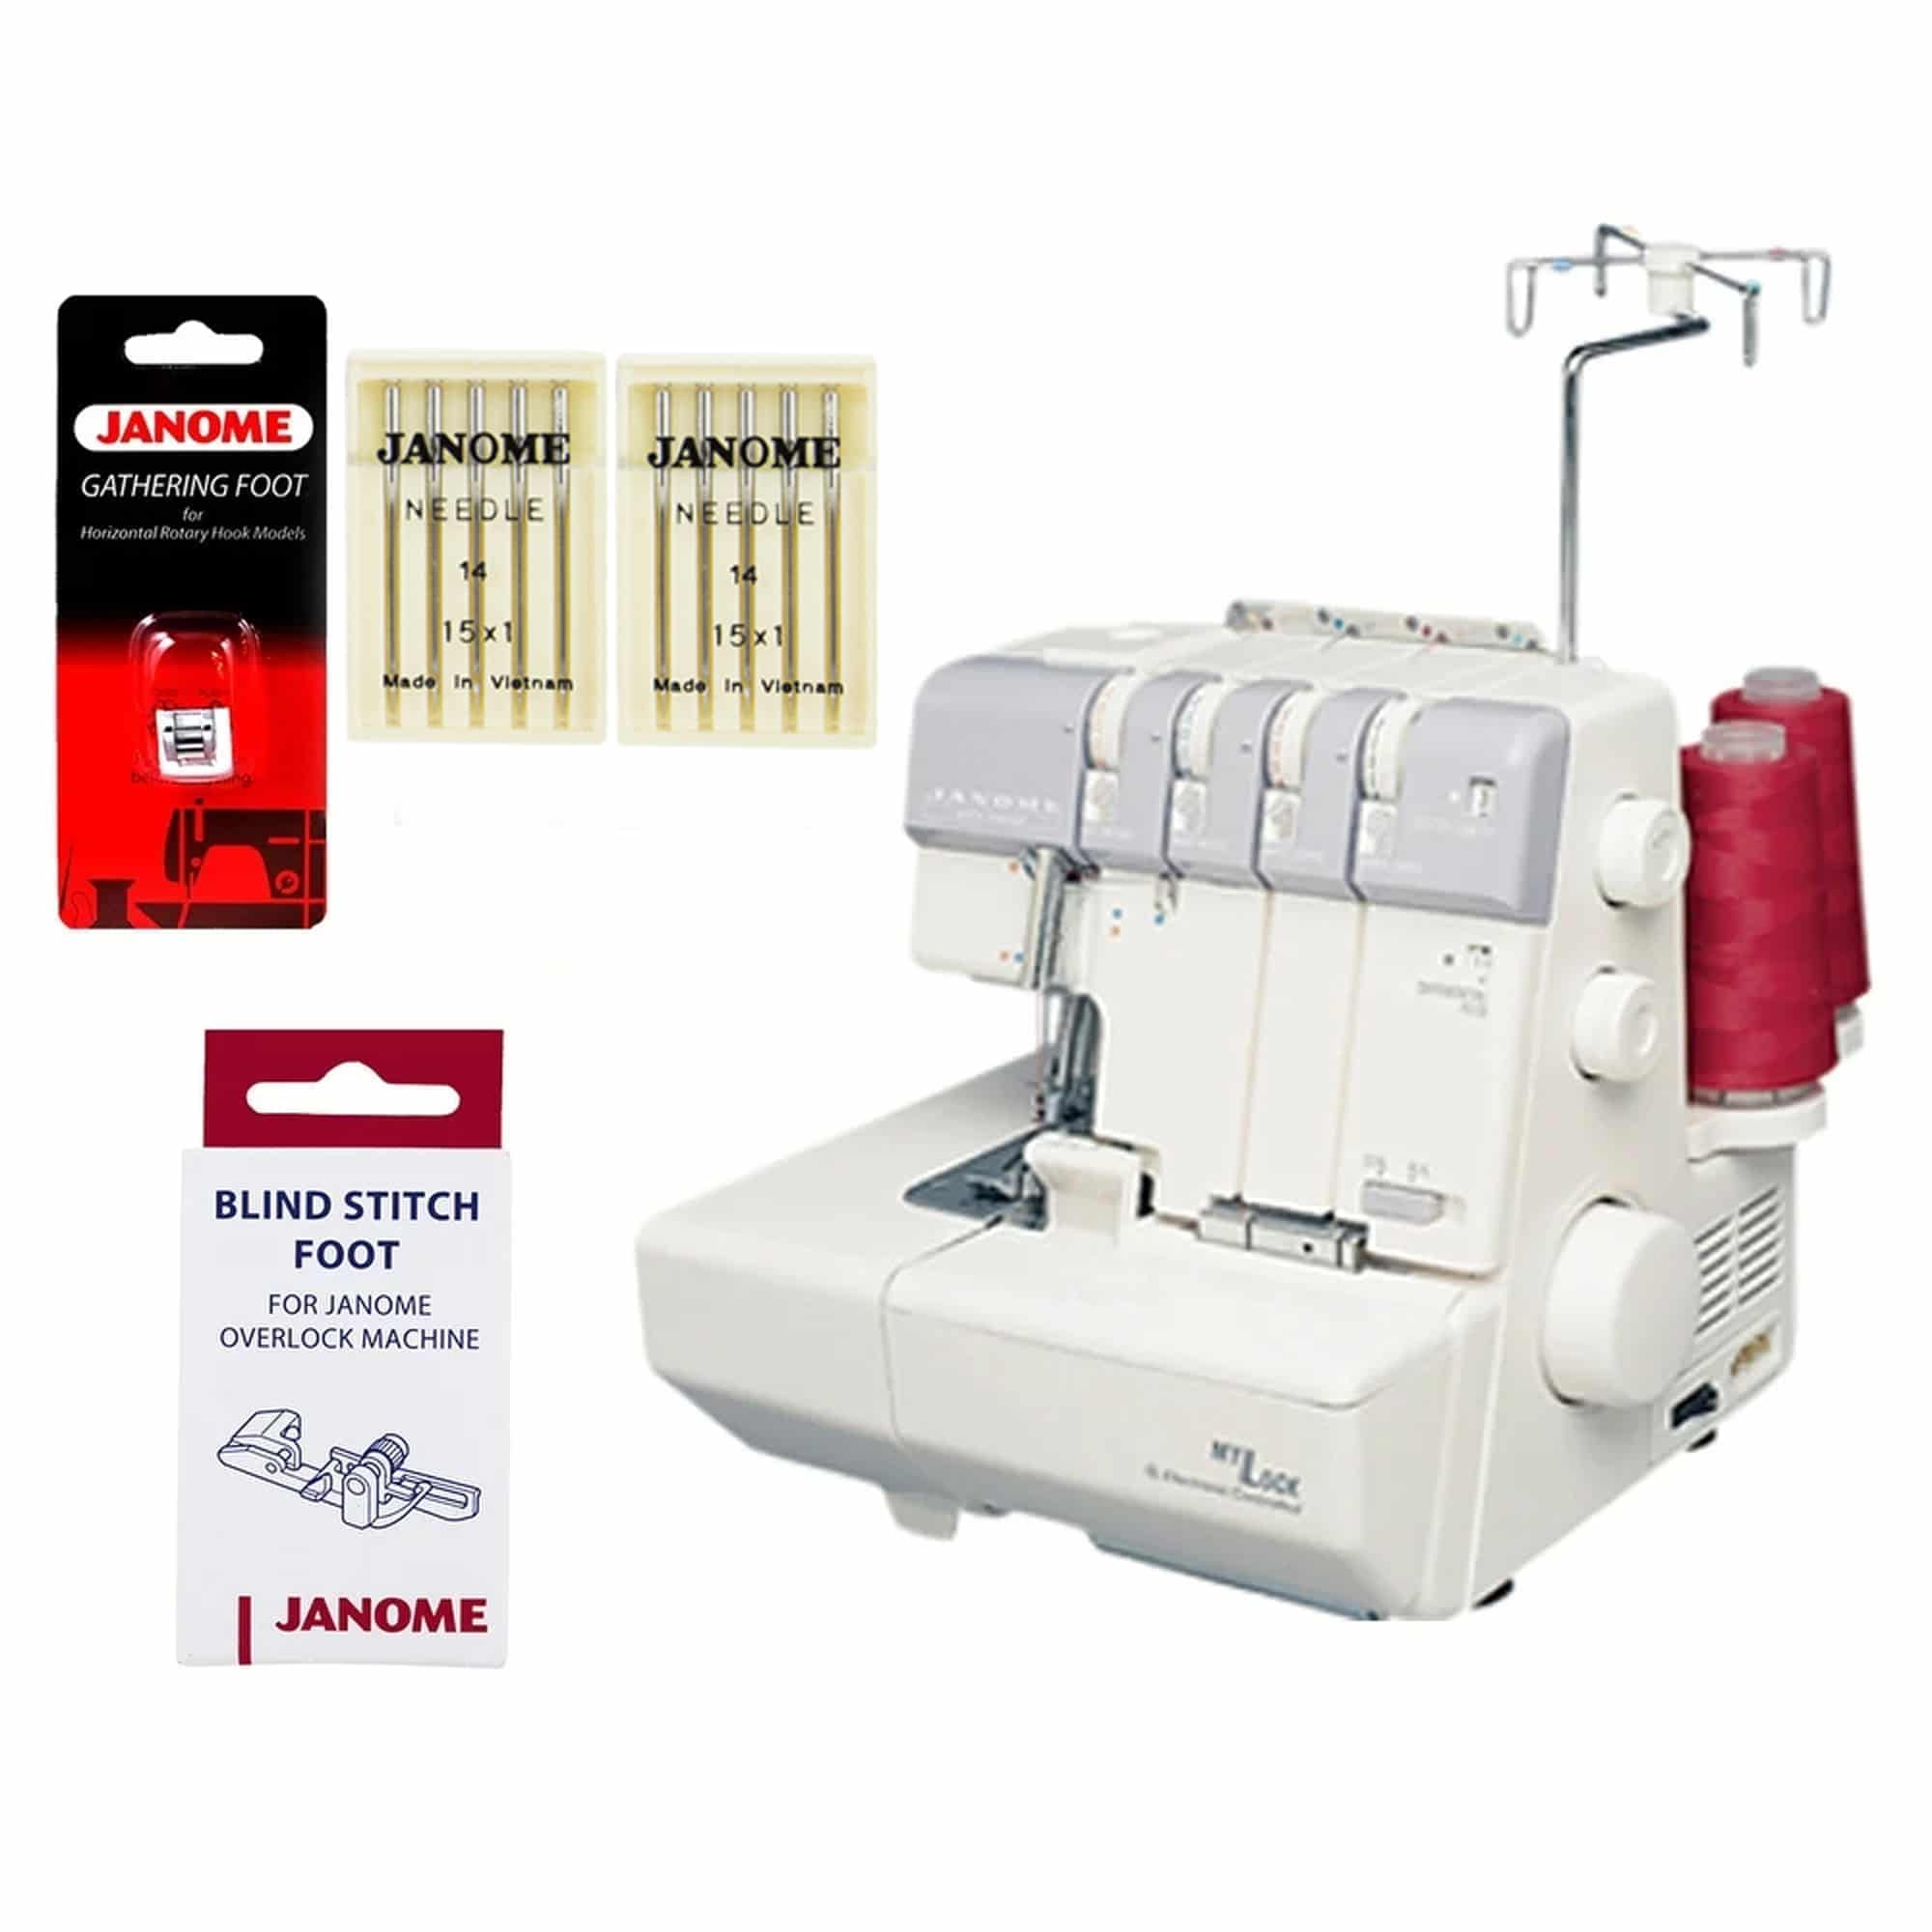 SINGER Máquina de coser manual de PILAS – Insumos textiles para la  Industria de la Confeccion.